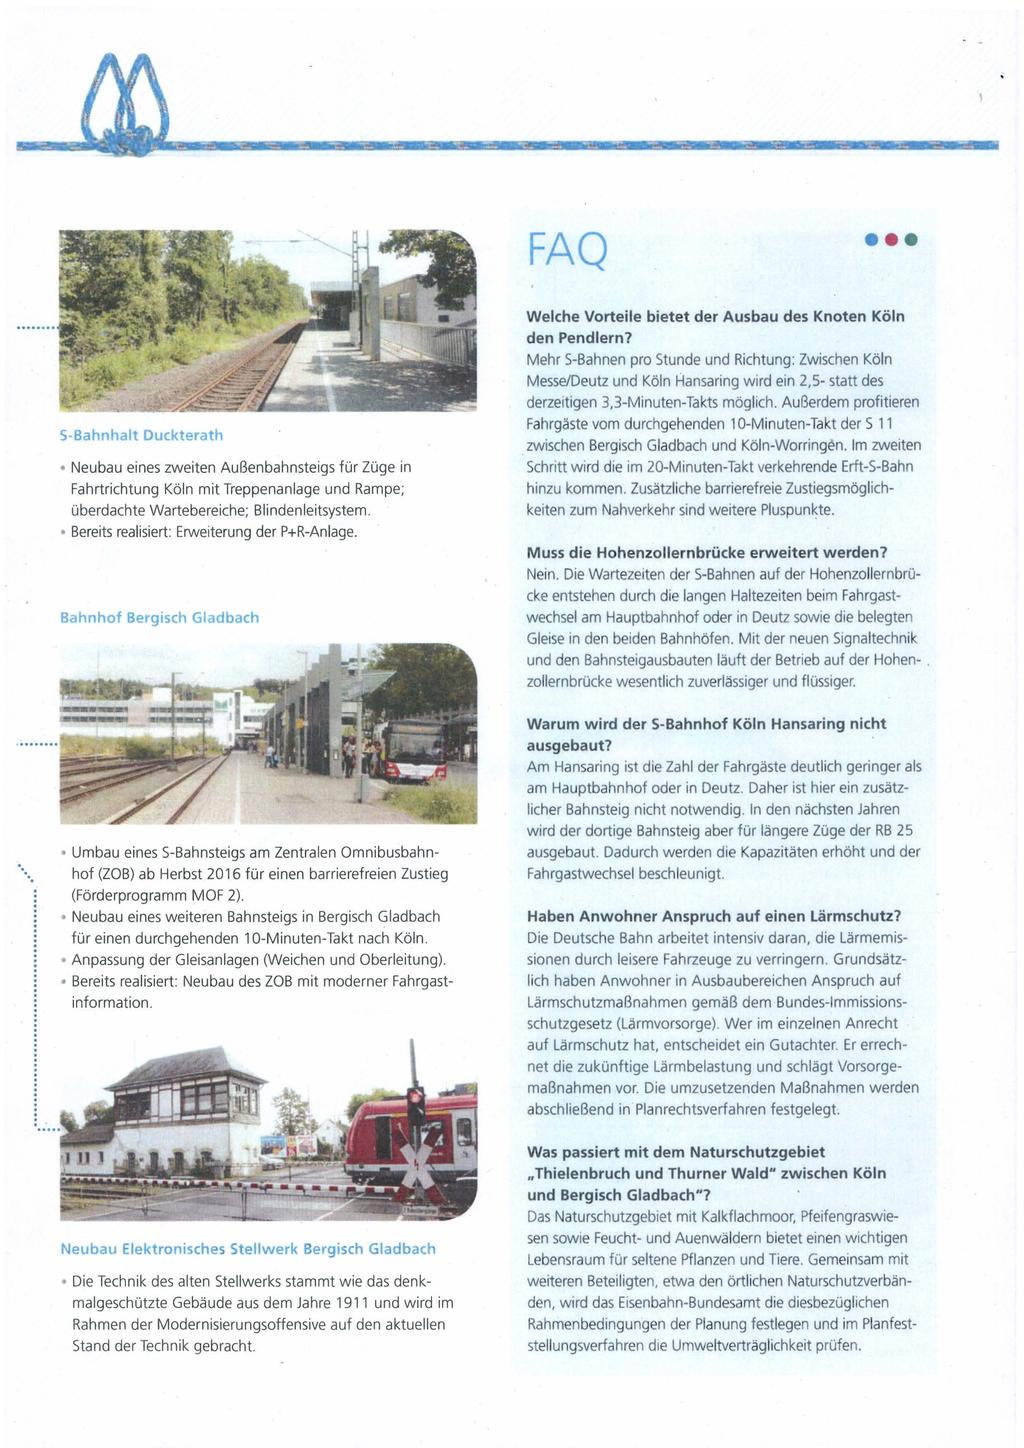 FAQ S-Bahnhalt Duckterath Neubau eines zweiten Außenbahnsteigs für Züge in Fahrtrichtung Köln mit Treppenanlage und Rampe; überdachte Wartebereiche; Blindenleitsystem.